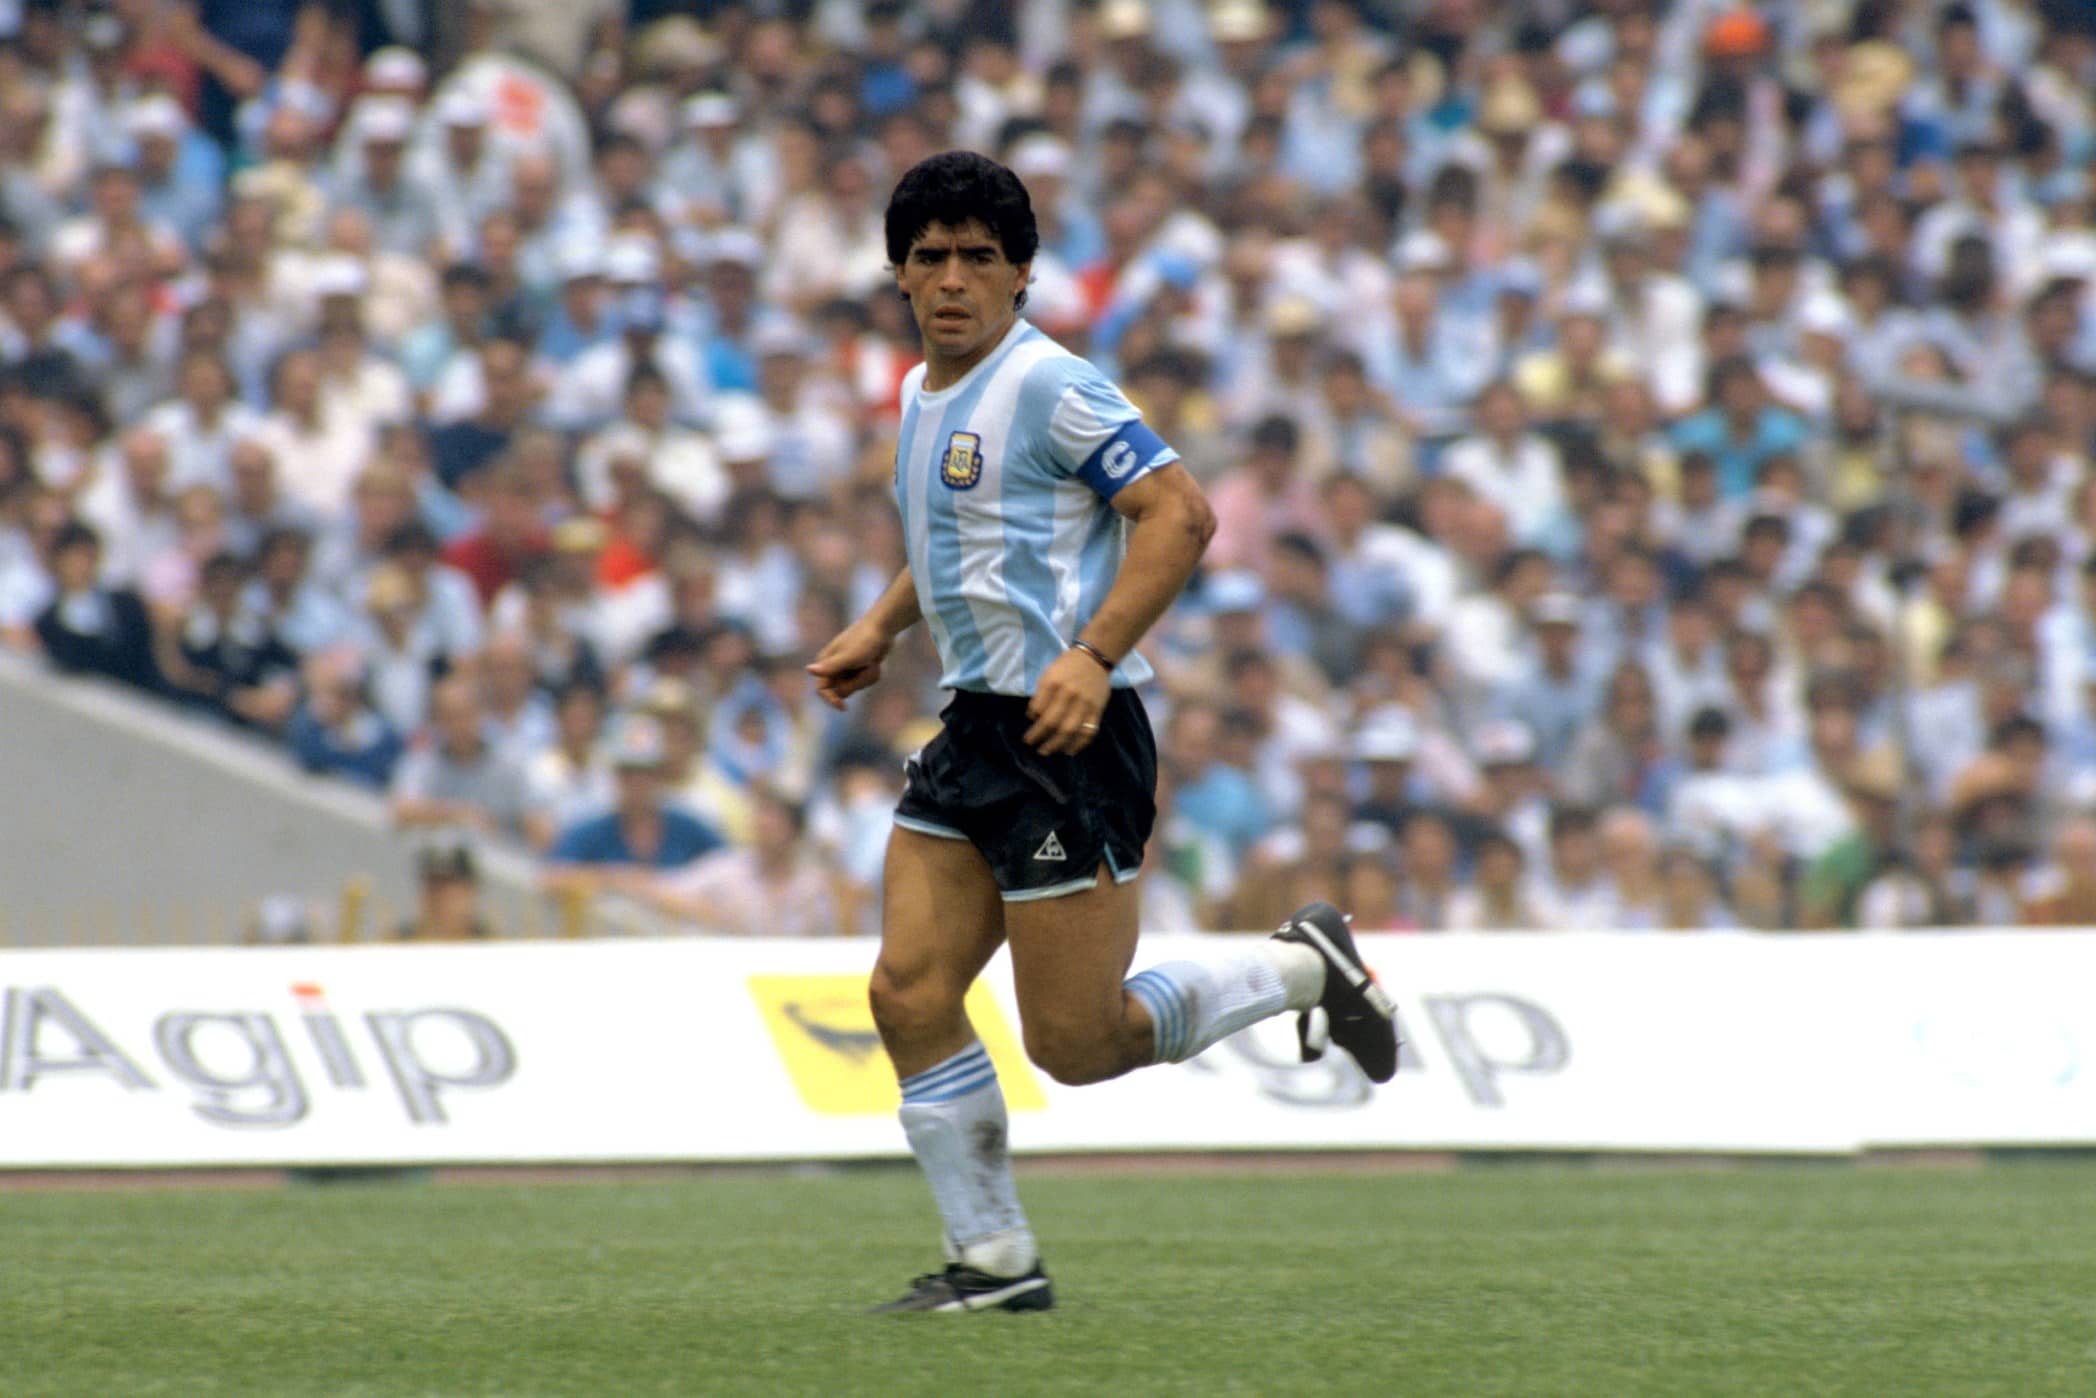 Descubra a história da Bola de Ouro perdida por Maradona que reapareceu